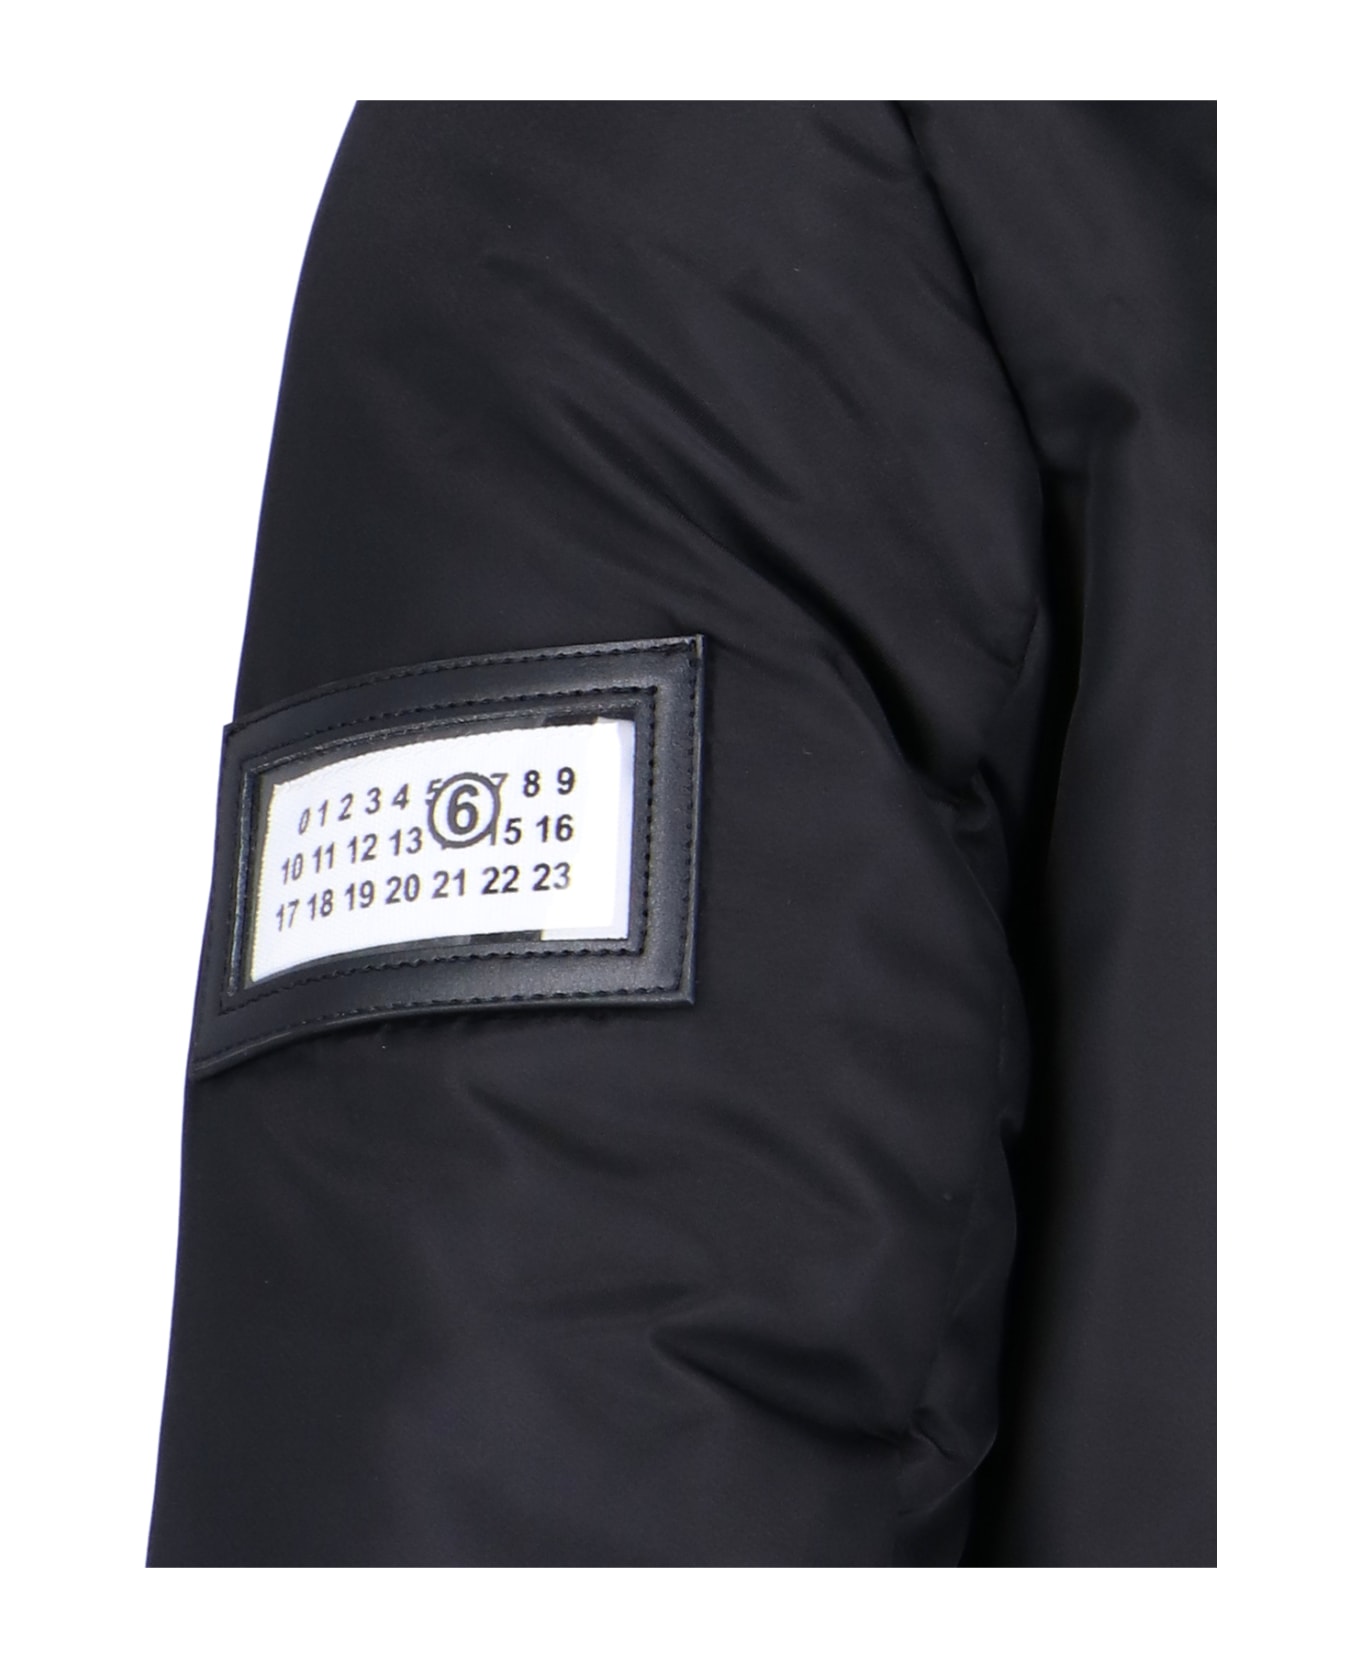 MM6 Maison Margiela Lightweight Jacket - Black レザージャケット